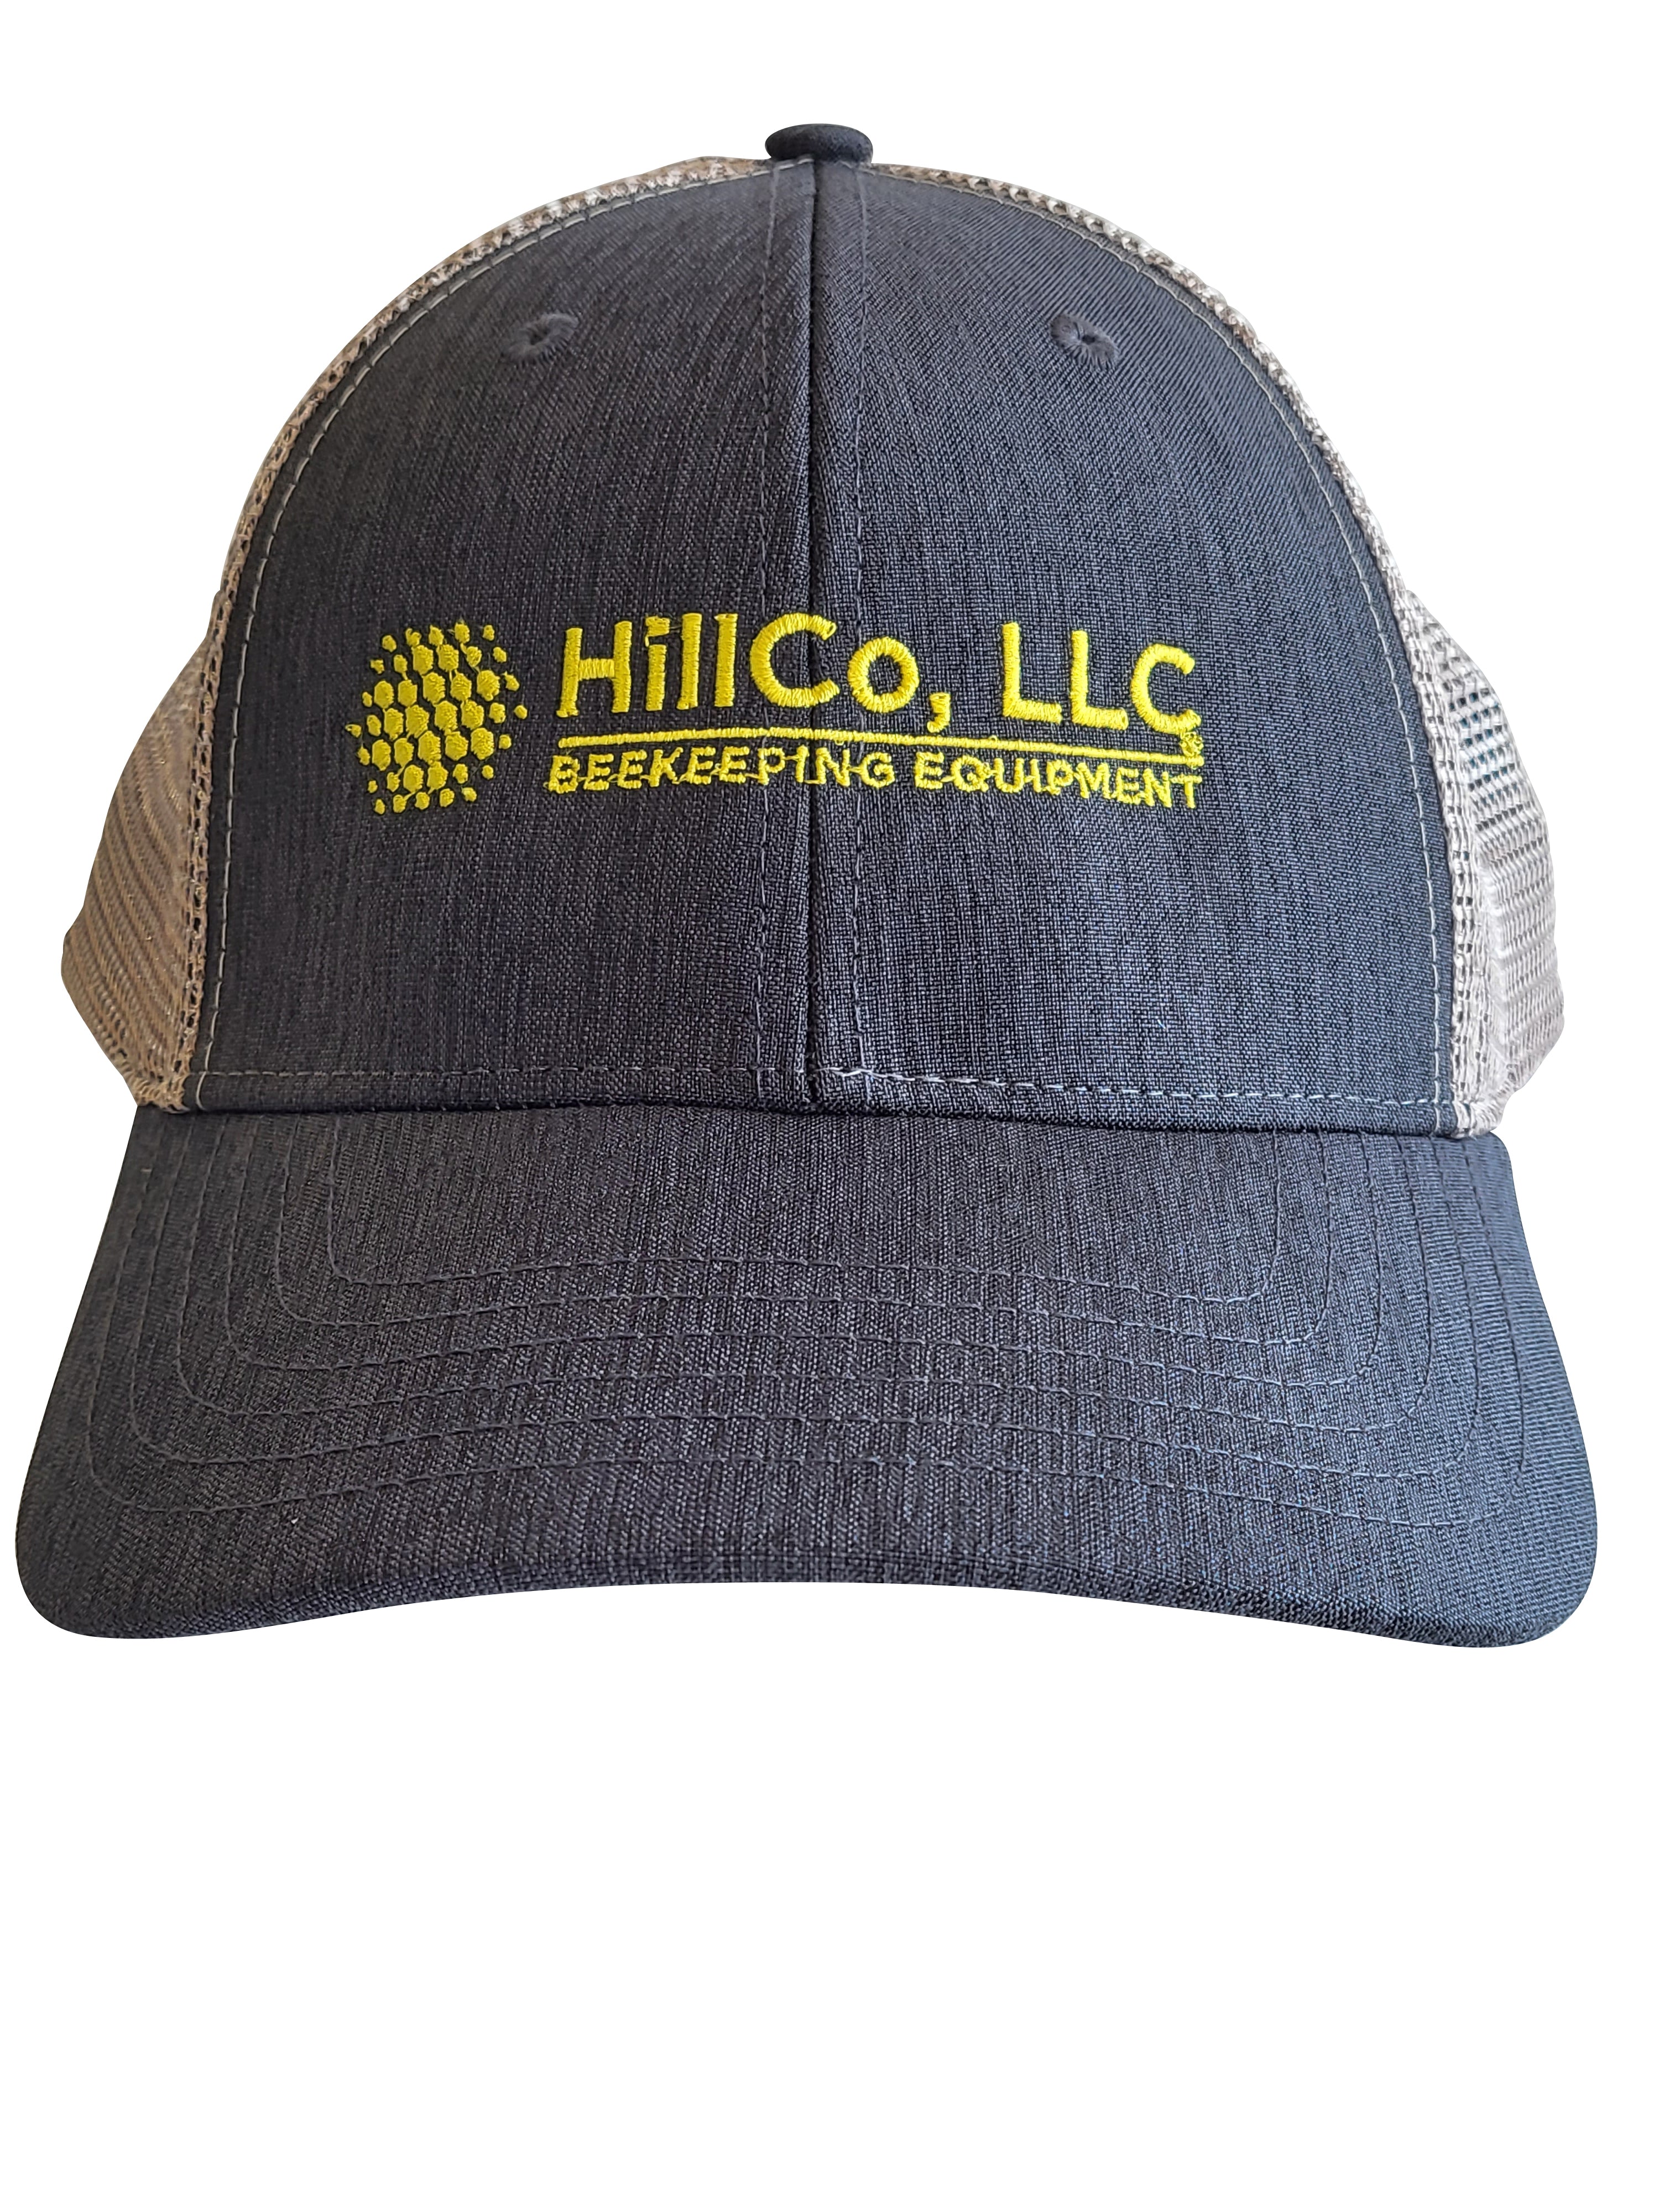 HillCo Ball Cap